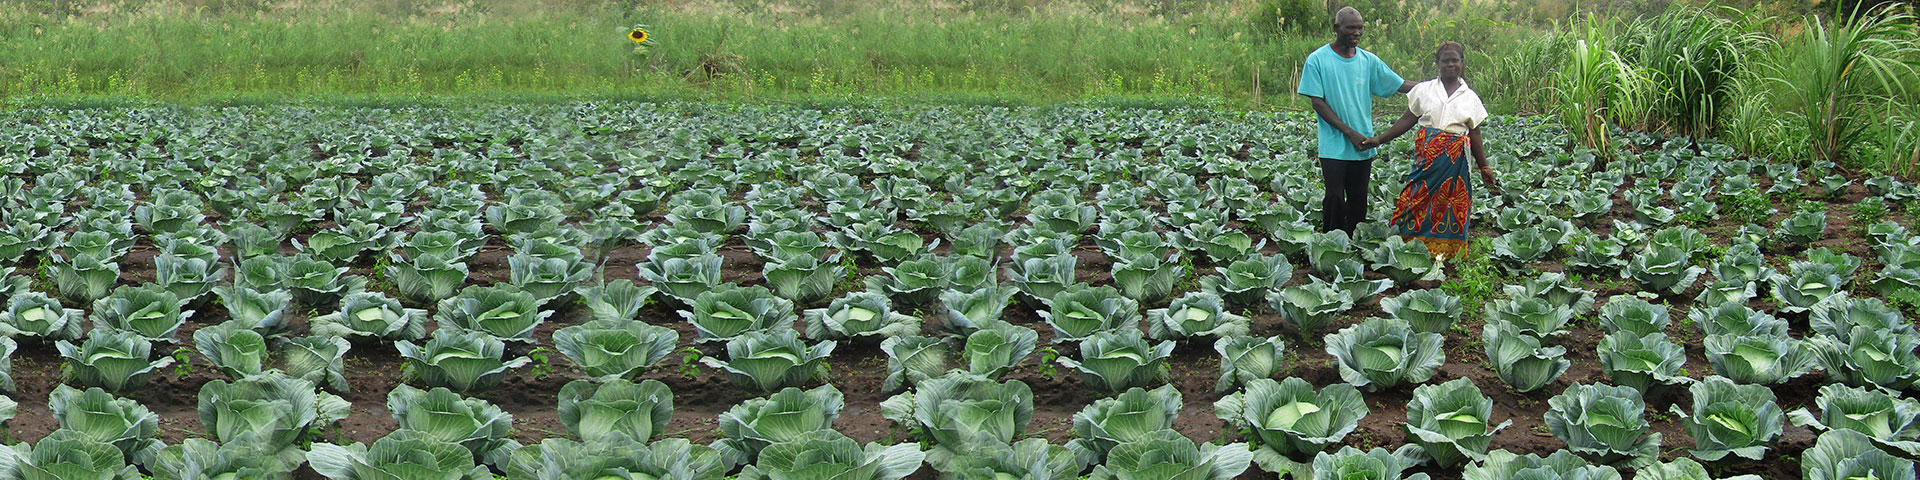 Kleinbäuerlicher Gemüseanbau mit verbessertem Saatgut in Sambia  © GIZ, C-NRM